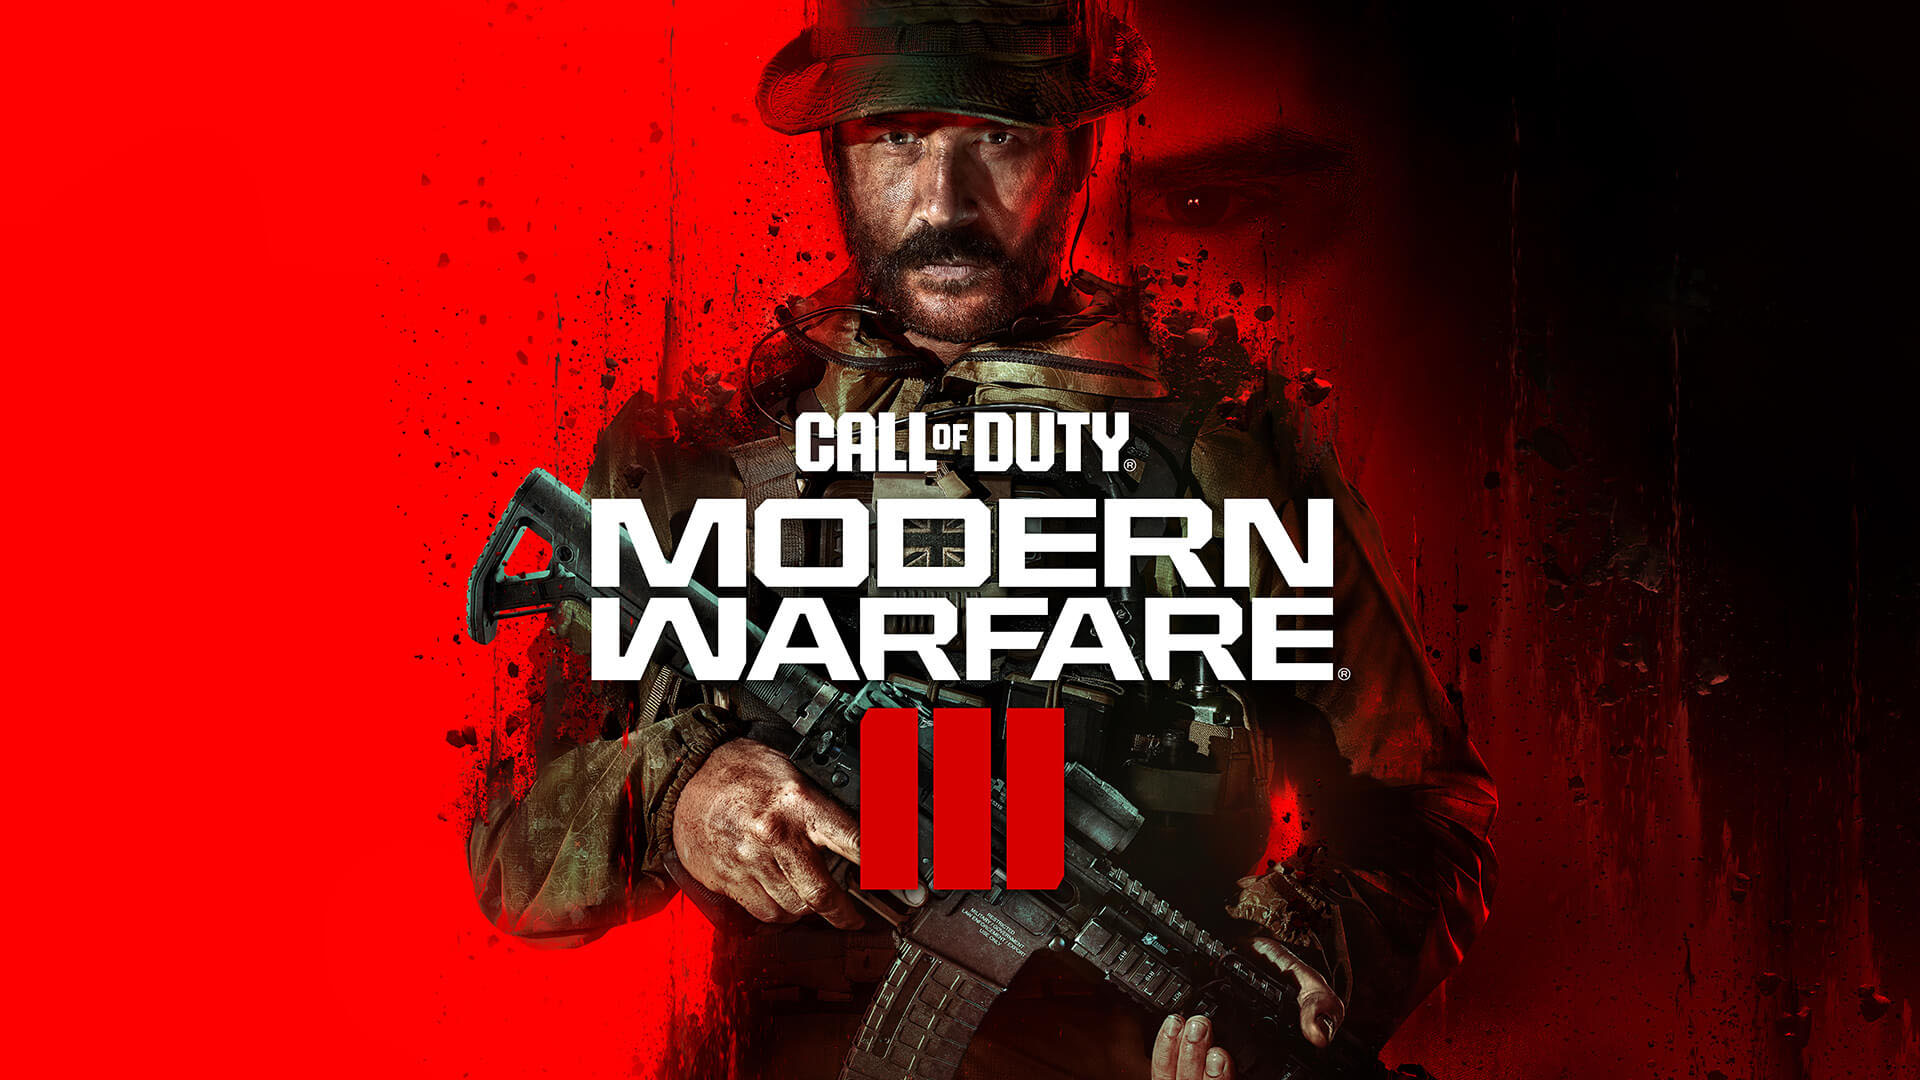 Guía de trofeos Call Of Duty Mordern Warfare 3 - Platino COD MW3